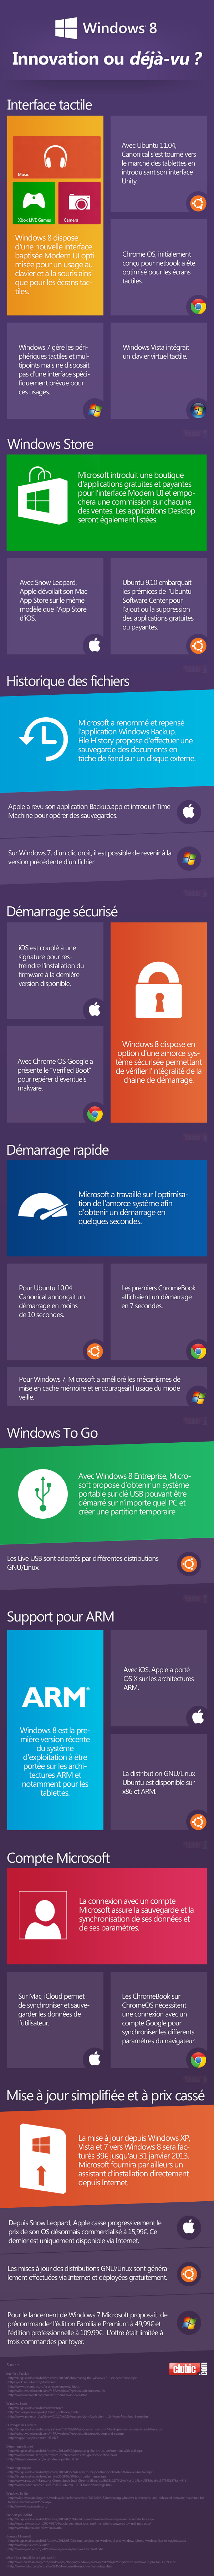 #Windows8 : une véritable innovation ou une impression de déjà-vu? [infographie]